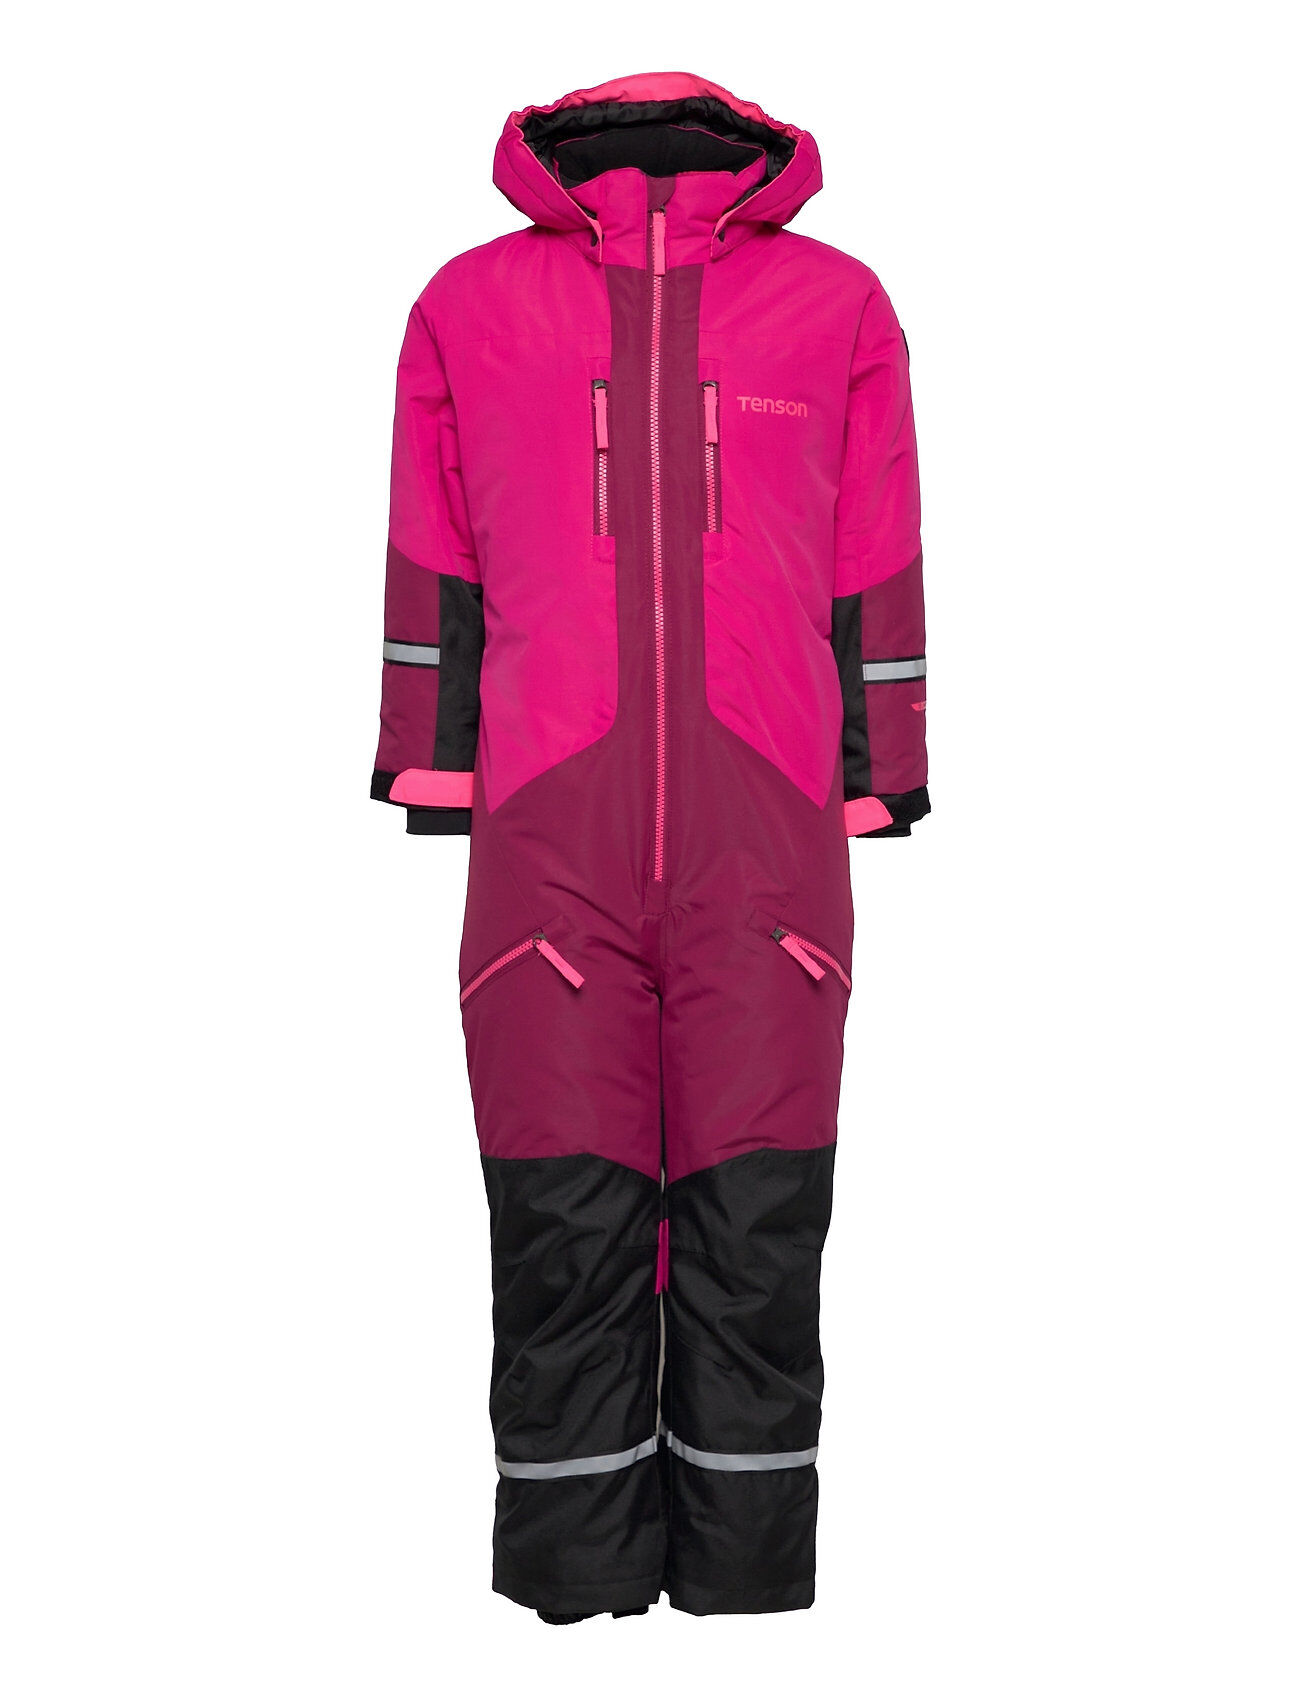 Tenson Dragon Outerwear Coveralls Snow/ski Coveralls & Sets Rosa Tenson